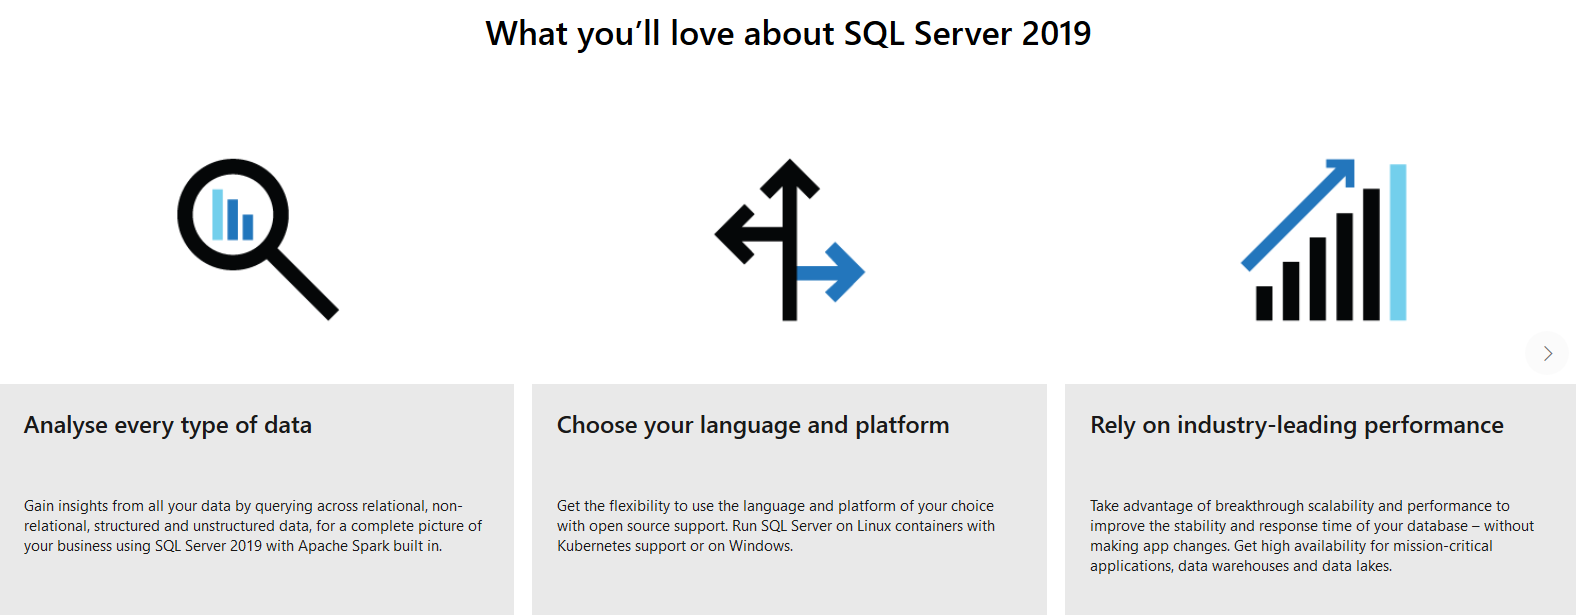 SQL Server 2019 